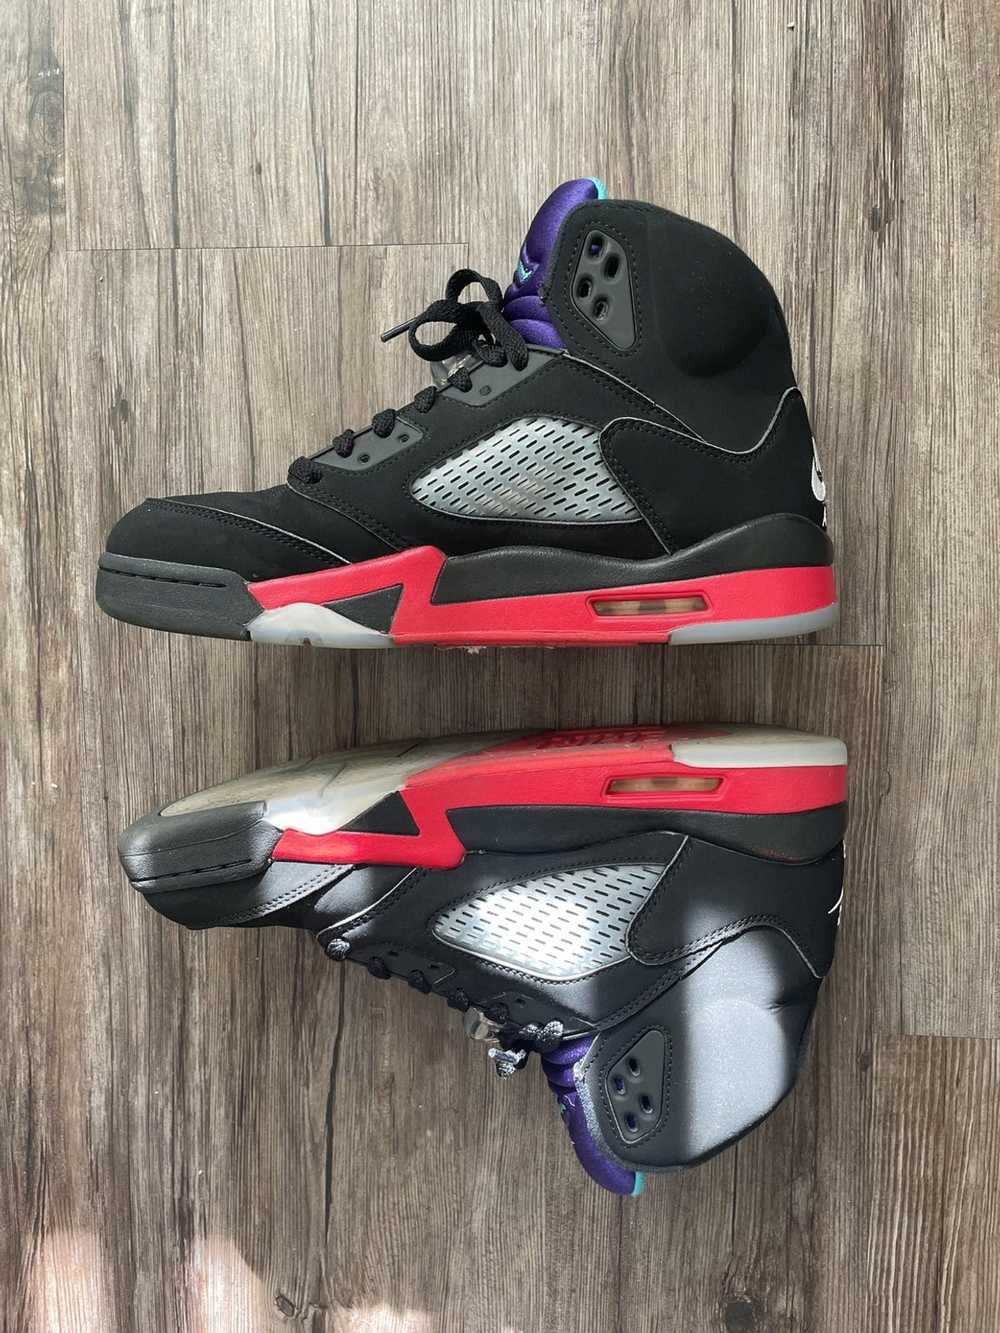 Jordan Brand × Nike Air Jordan 5 “Top 3” - image 3